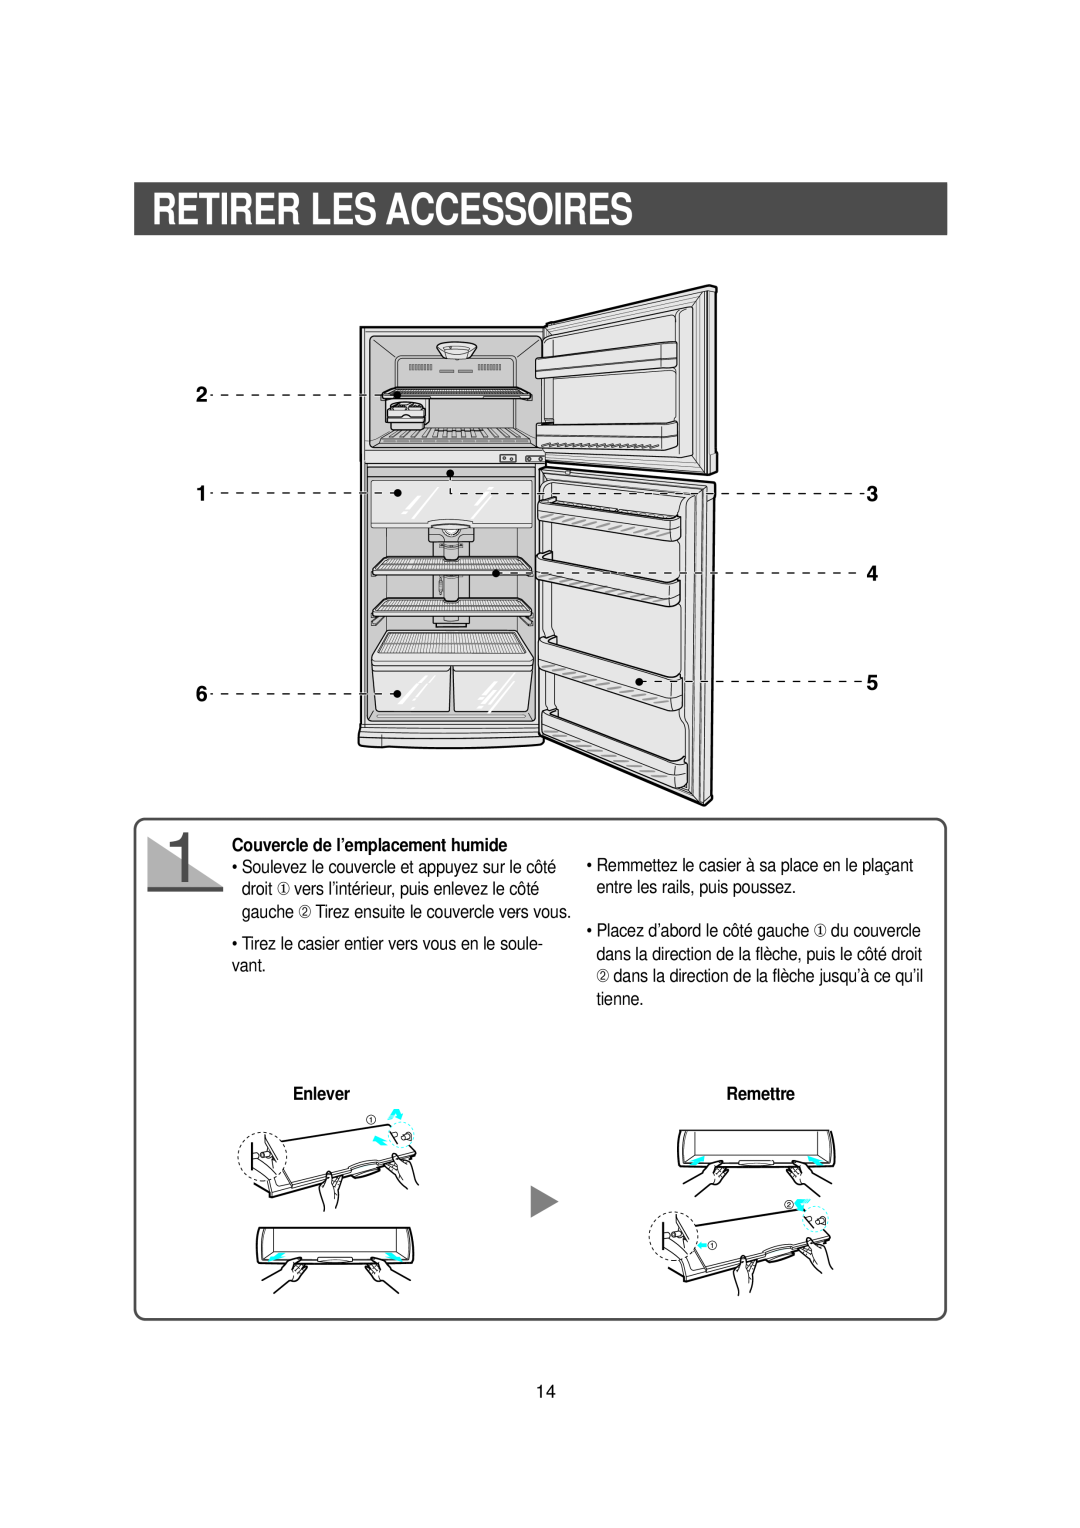 Samsung DA99-00477C manual Retirer Les Accessoires, Couvercle de l’emplacement humide, Enlever, Remettre 